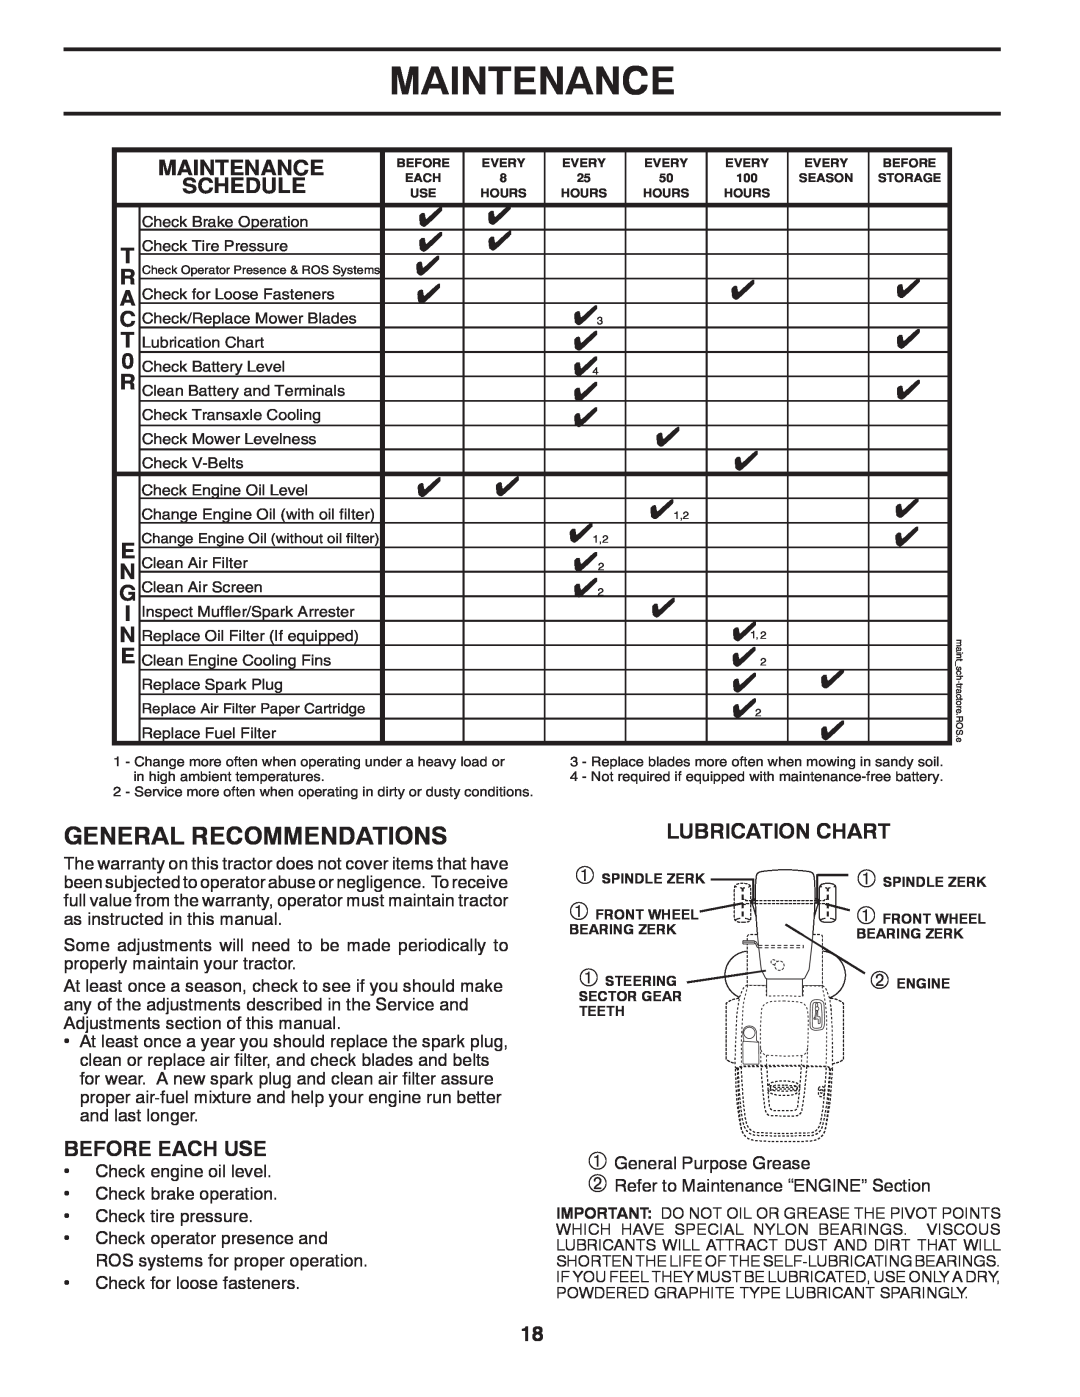 Jonsered LT2220 CMA2 manual Maintenance, Lubrication Chart 